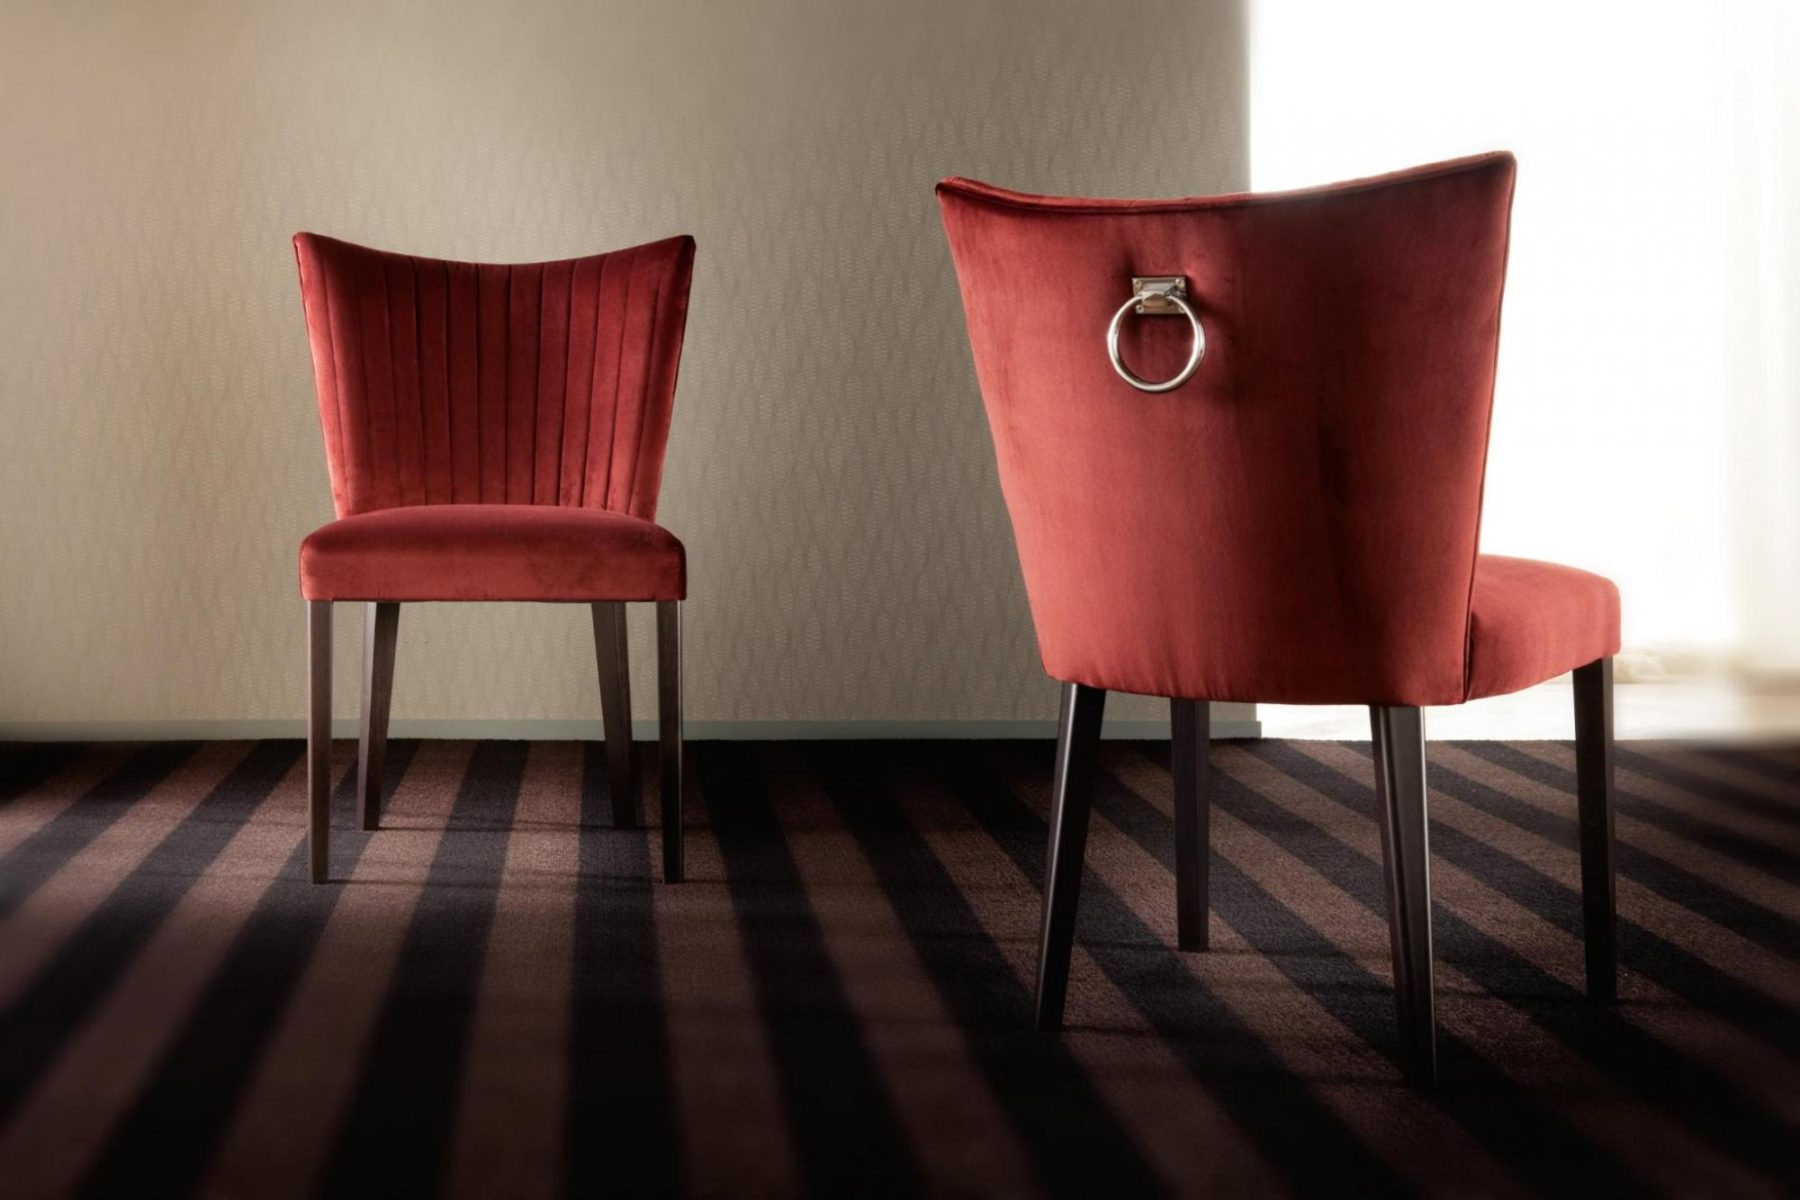 意大利家具costantinipietro的chairs-Milady 餐椅 细节图